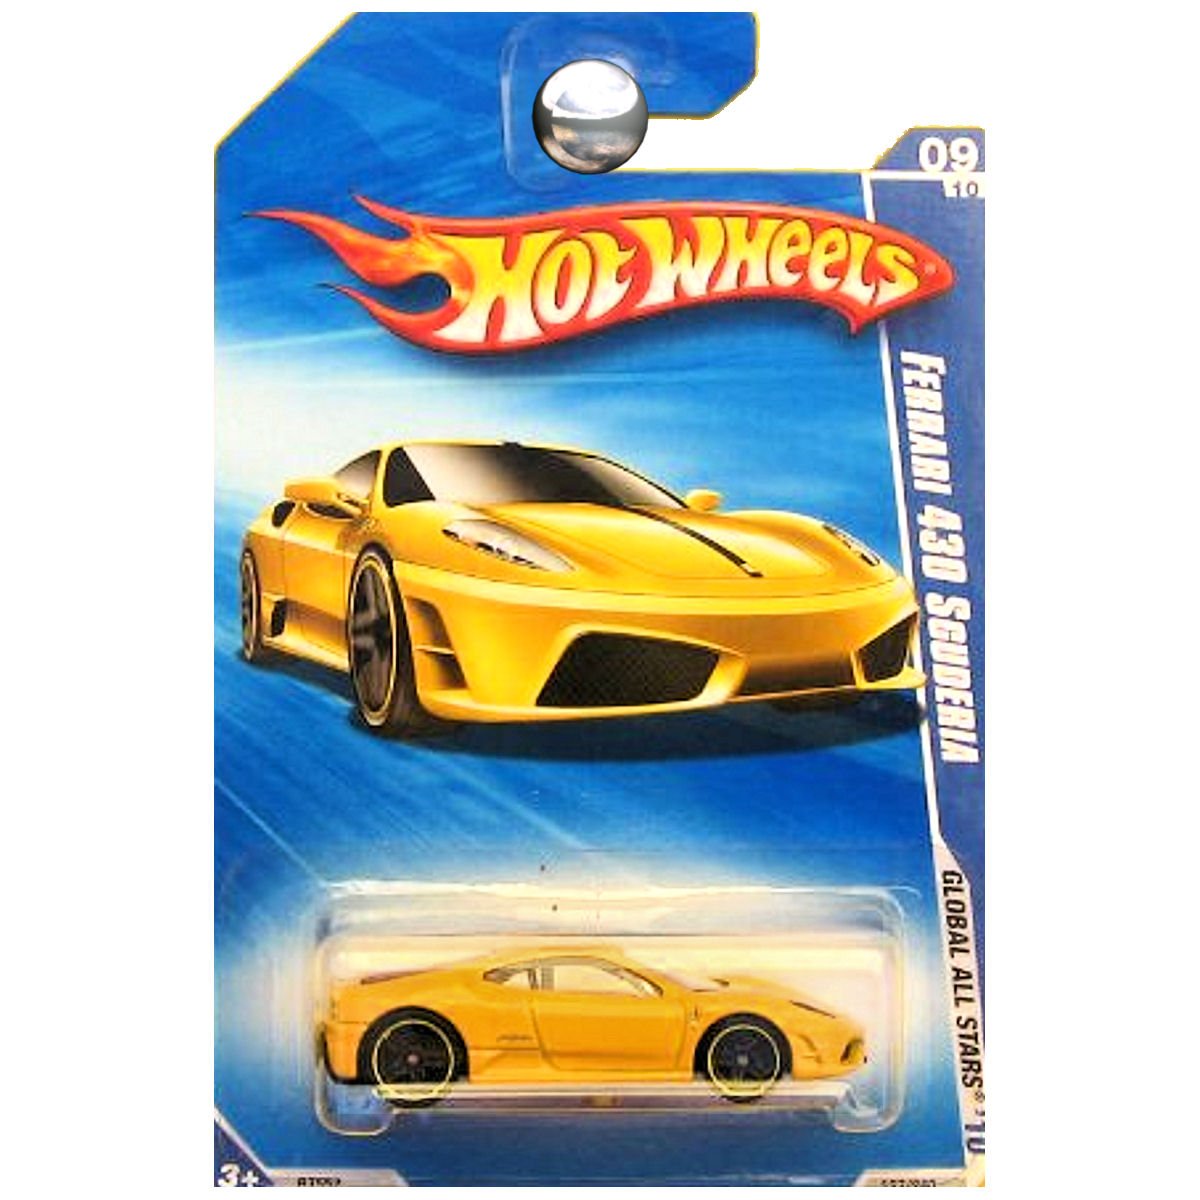 Hot Wheels Autko 5785 Mattel nowoczesne 